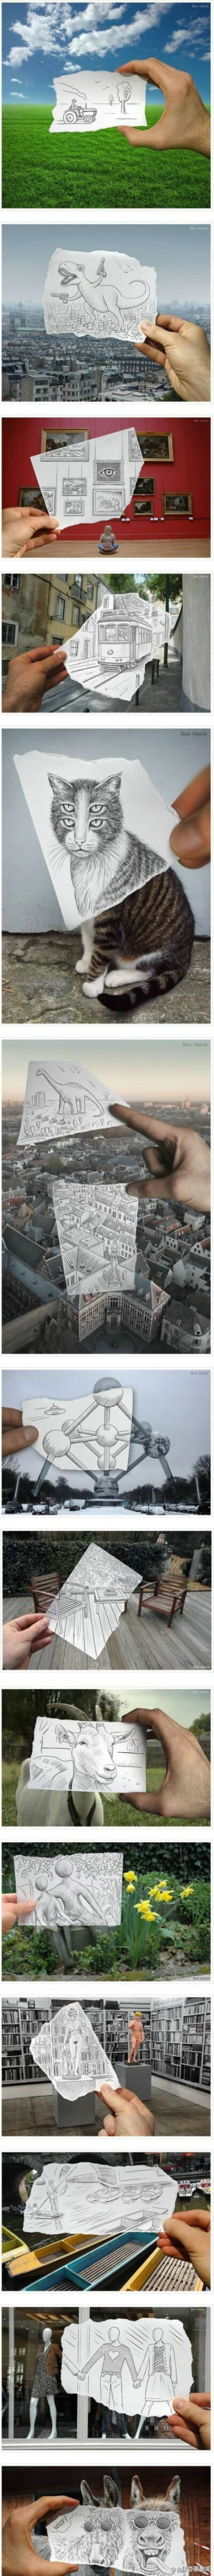 比利时的一位天才艺术家本·海涅，用铅笔和照片创造的神奇作品